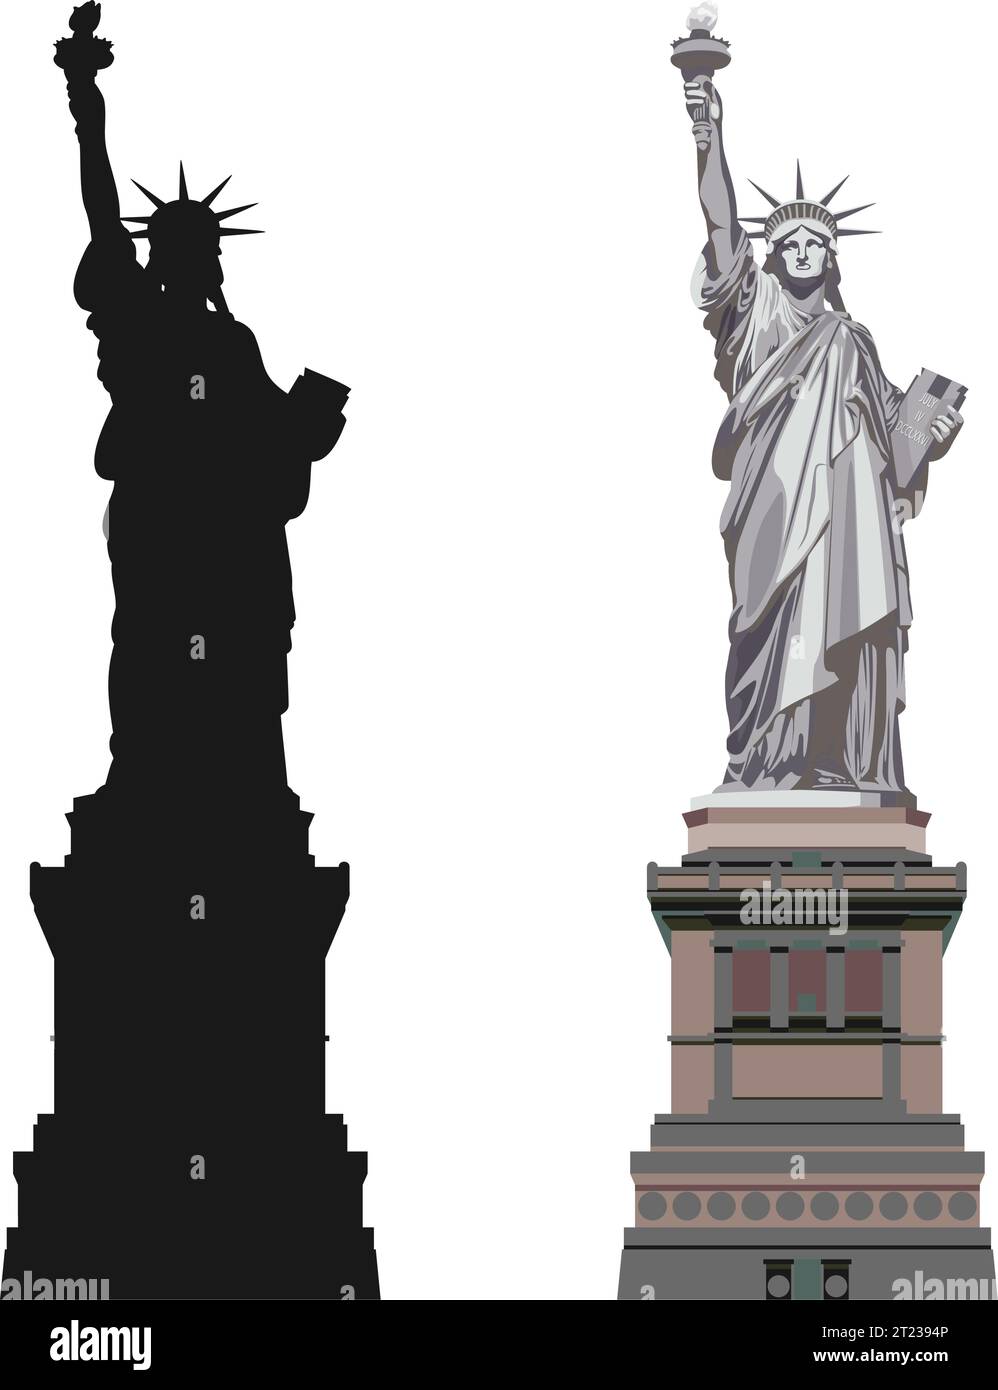 Statue de la liberté - NewYork- Illustration stock comme fichier EPS 10 Illustration de Vecteur